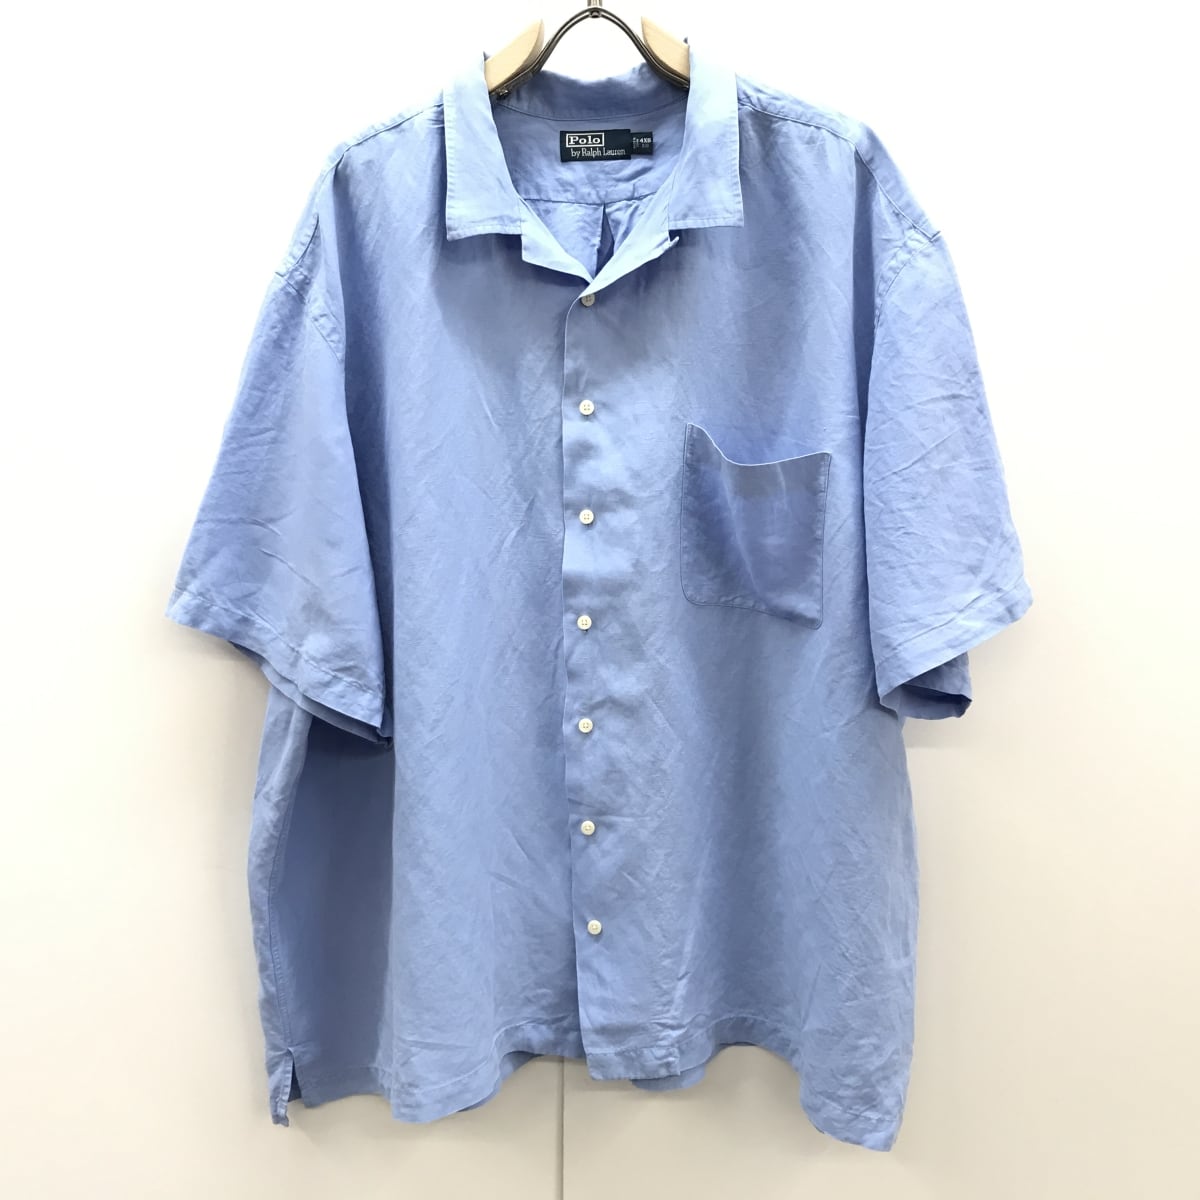 ラルフローレン CLASSIC FIT オープンカラー 半袖リネンシルクシャツ